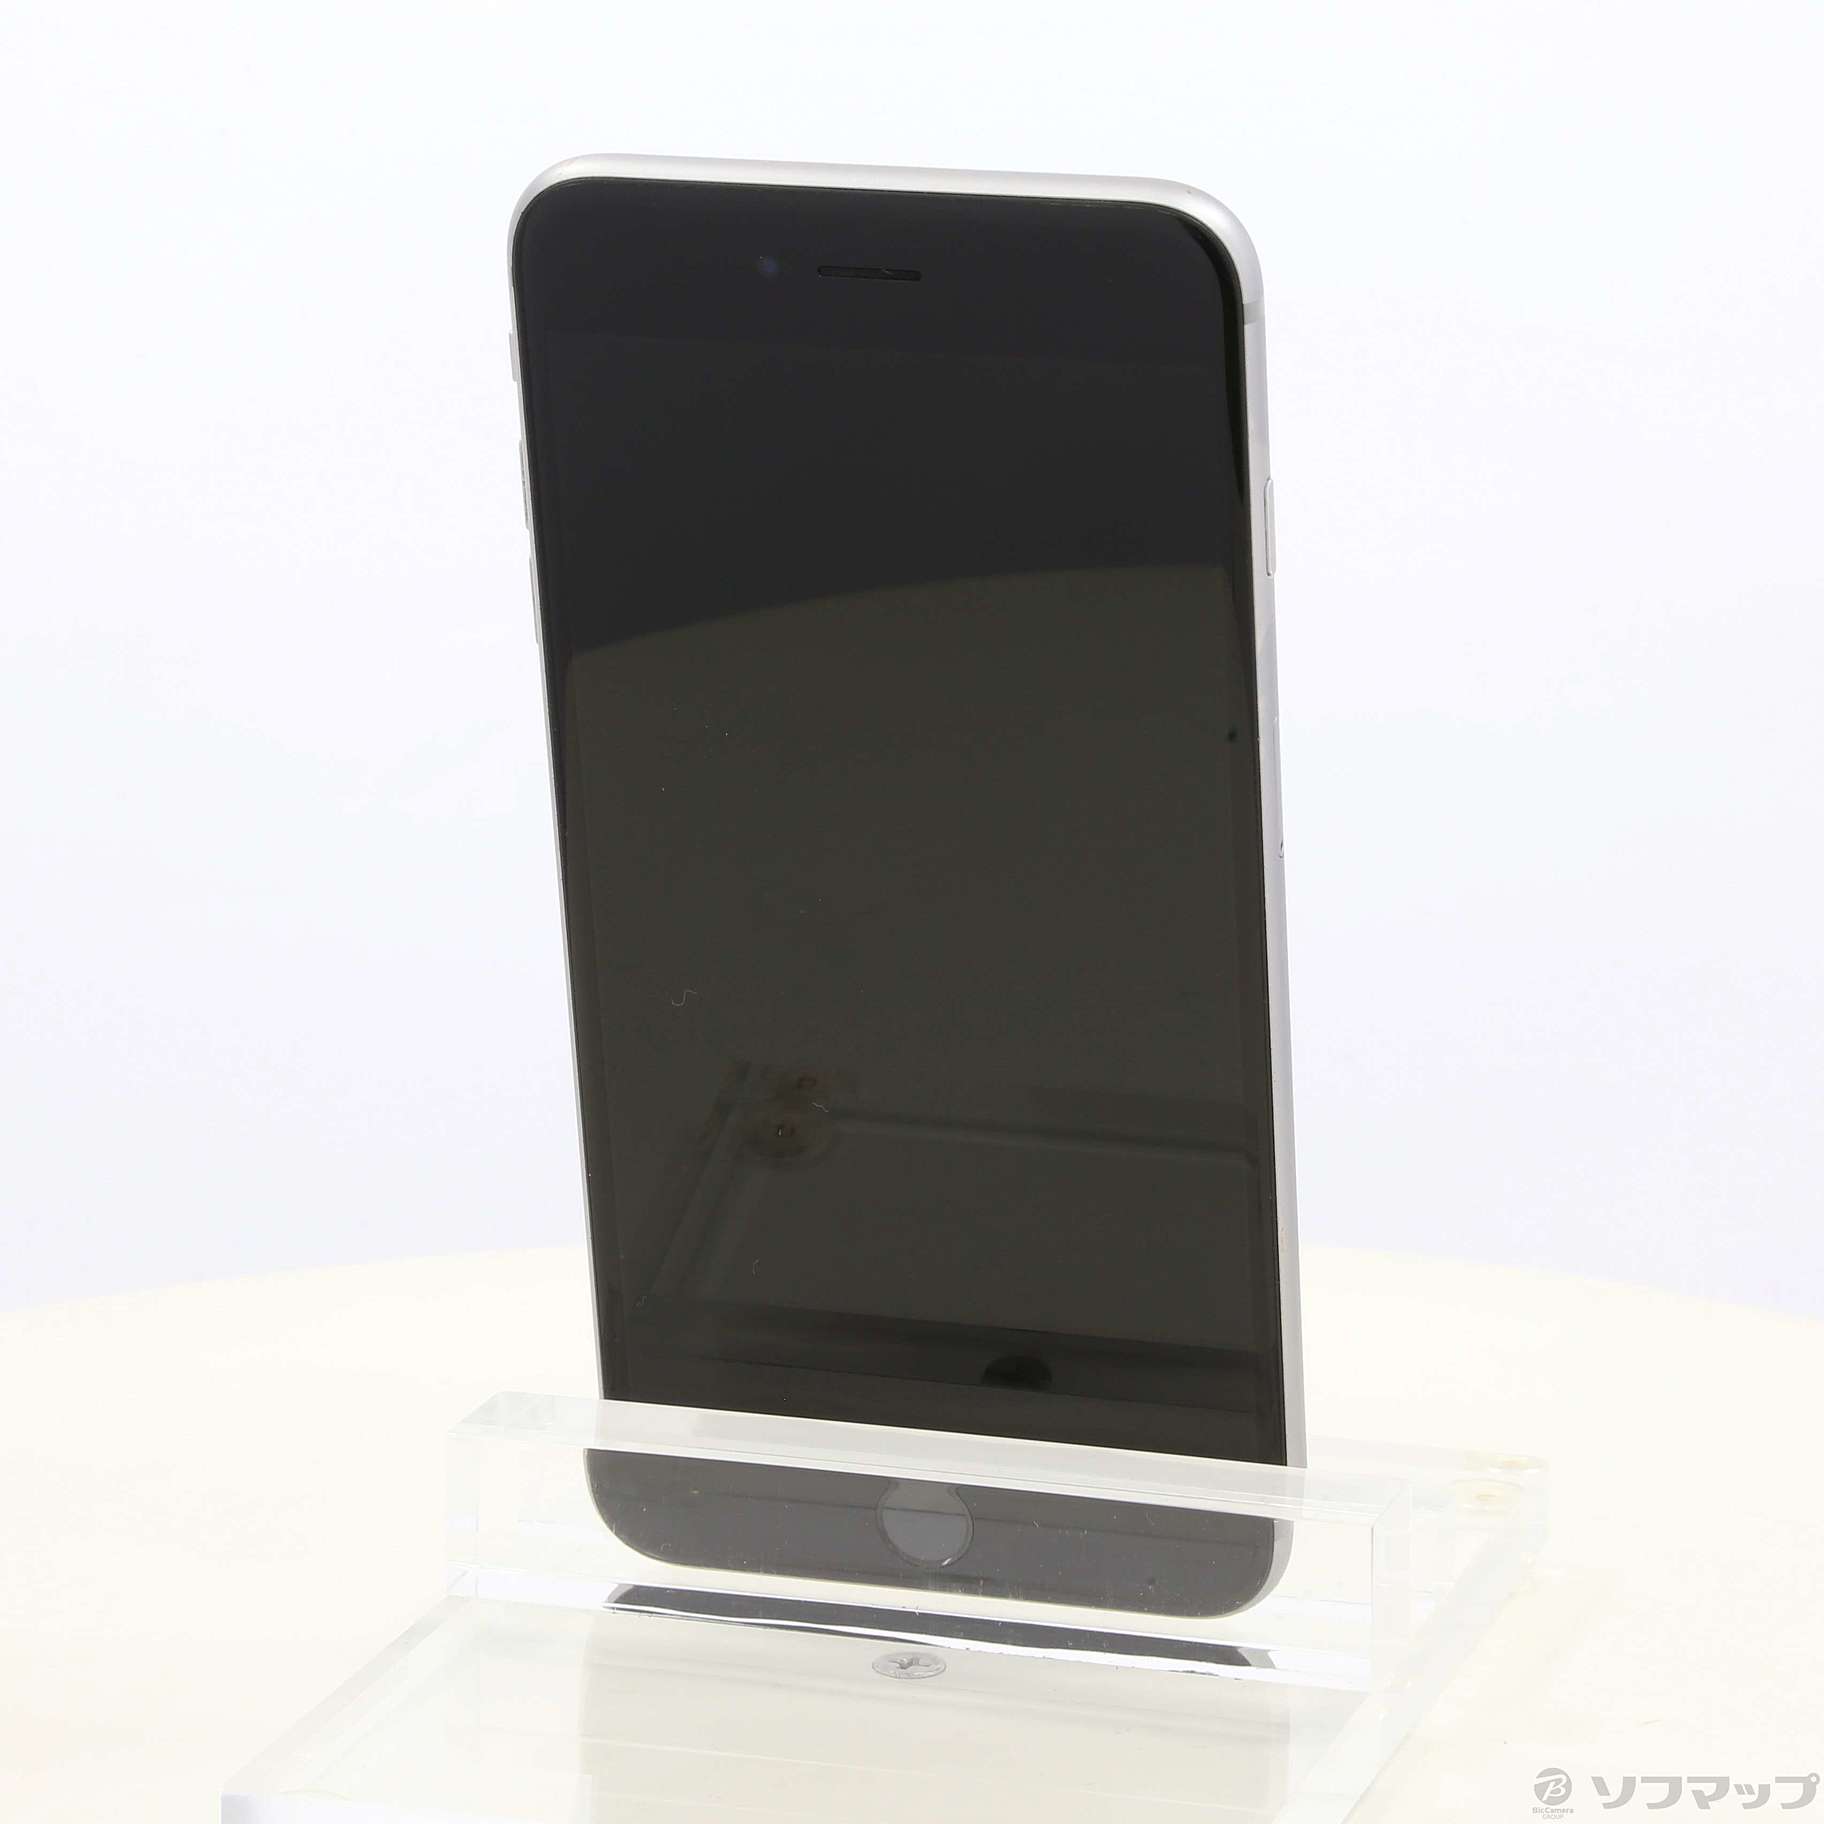 日本製格安SoftBank MKU62J/A iPhone 6s Plus 64GB スペースグレイ SB iPhone